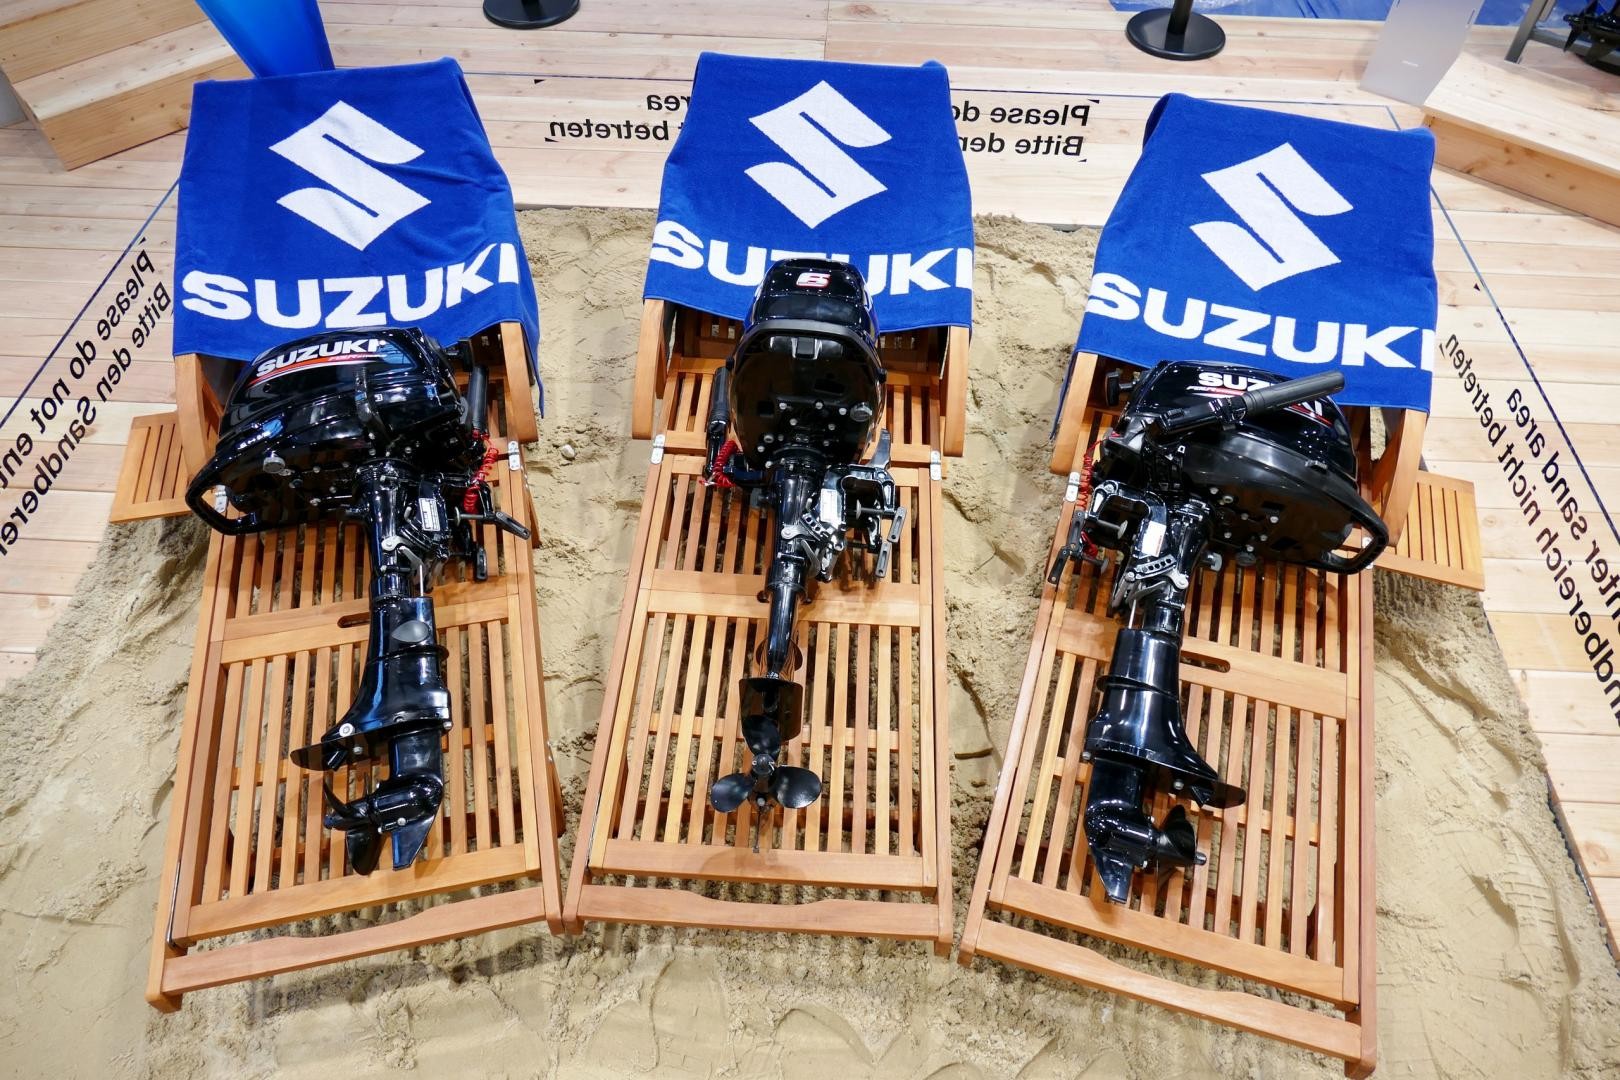 I nuovi fuoribordo 4 tempi trasportabili di Suzuki: DF4, DF5 e DF6